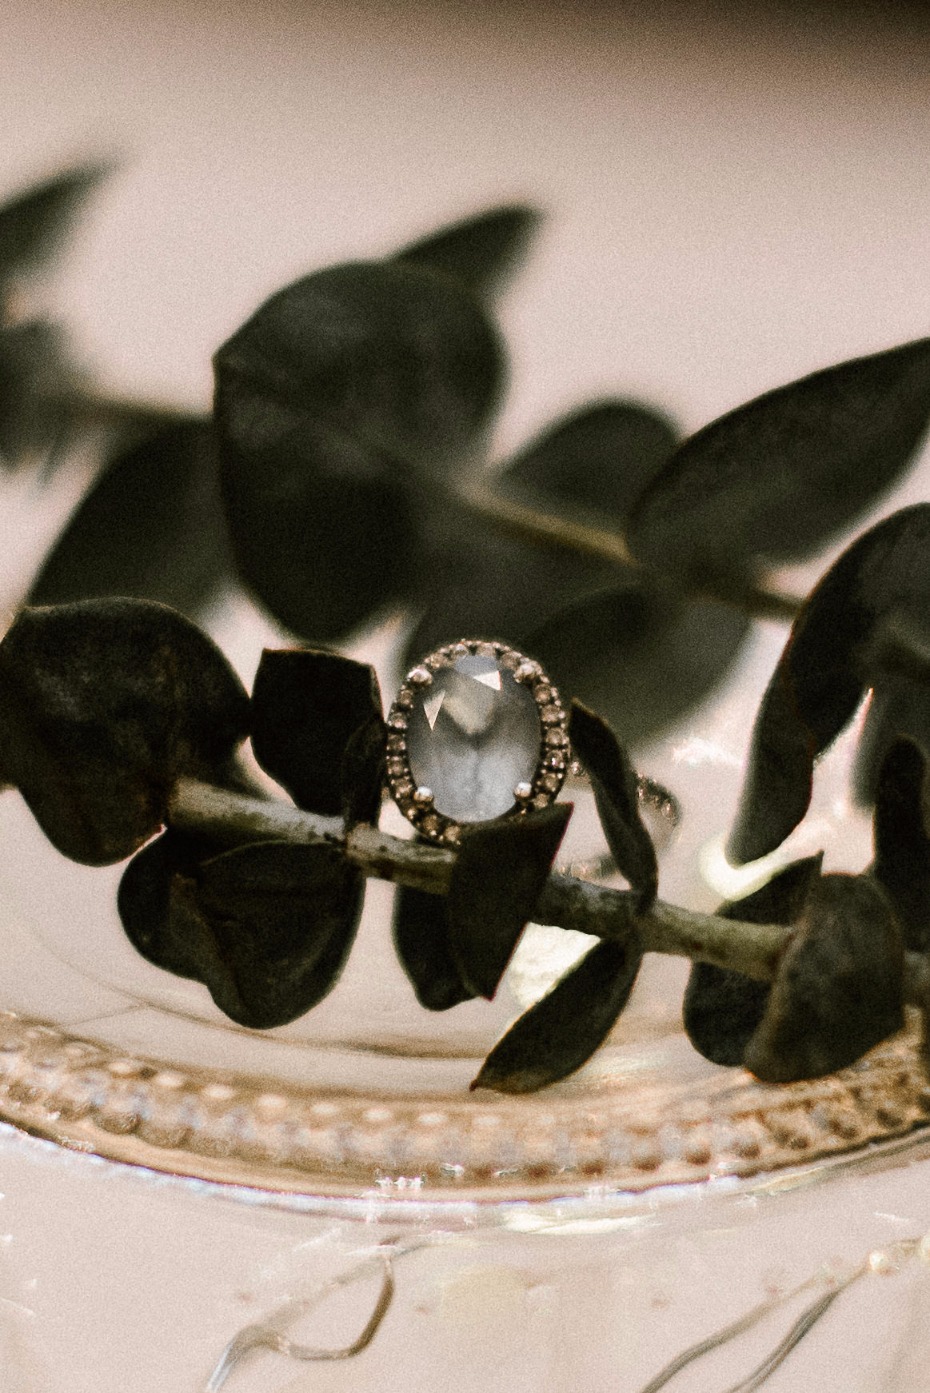 vintage wedding ring